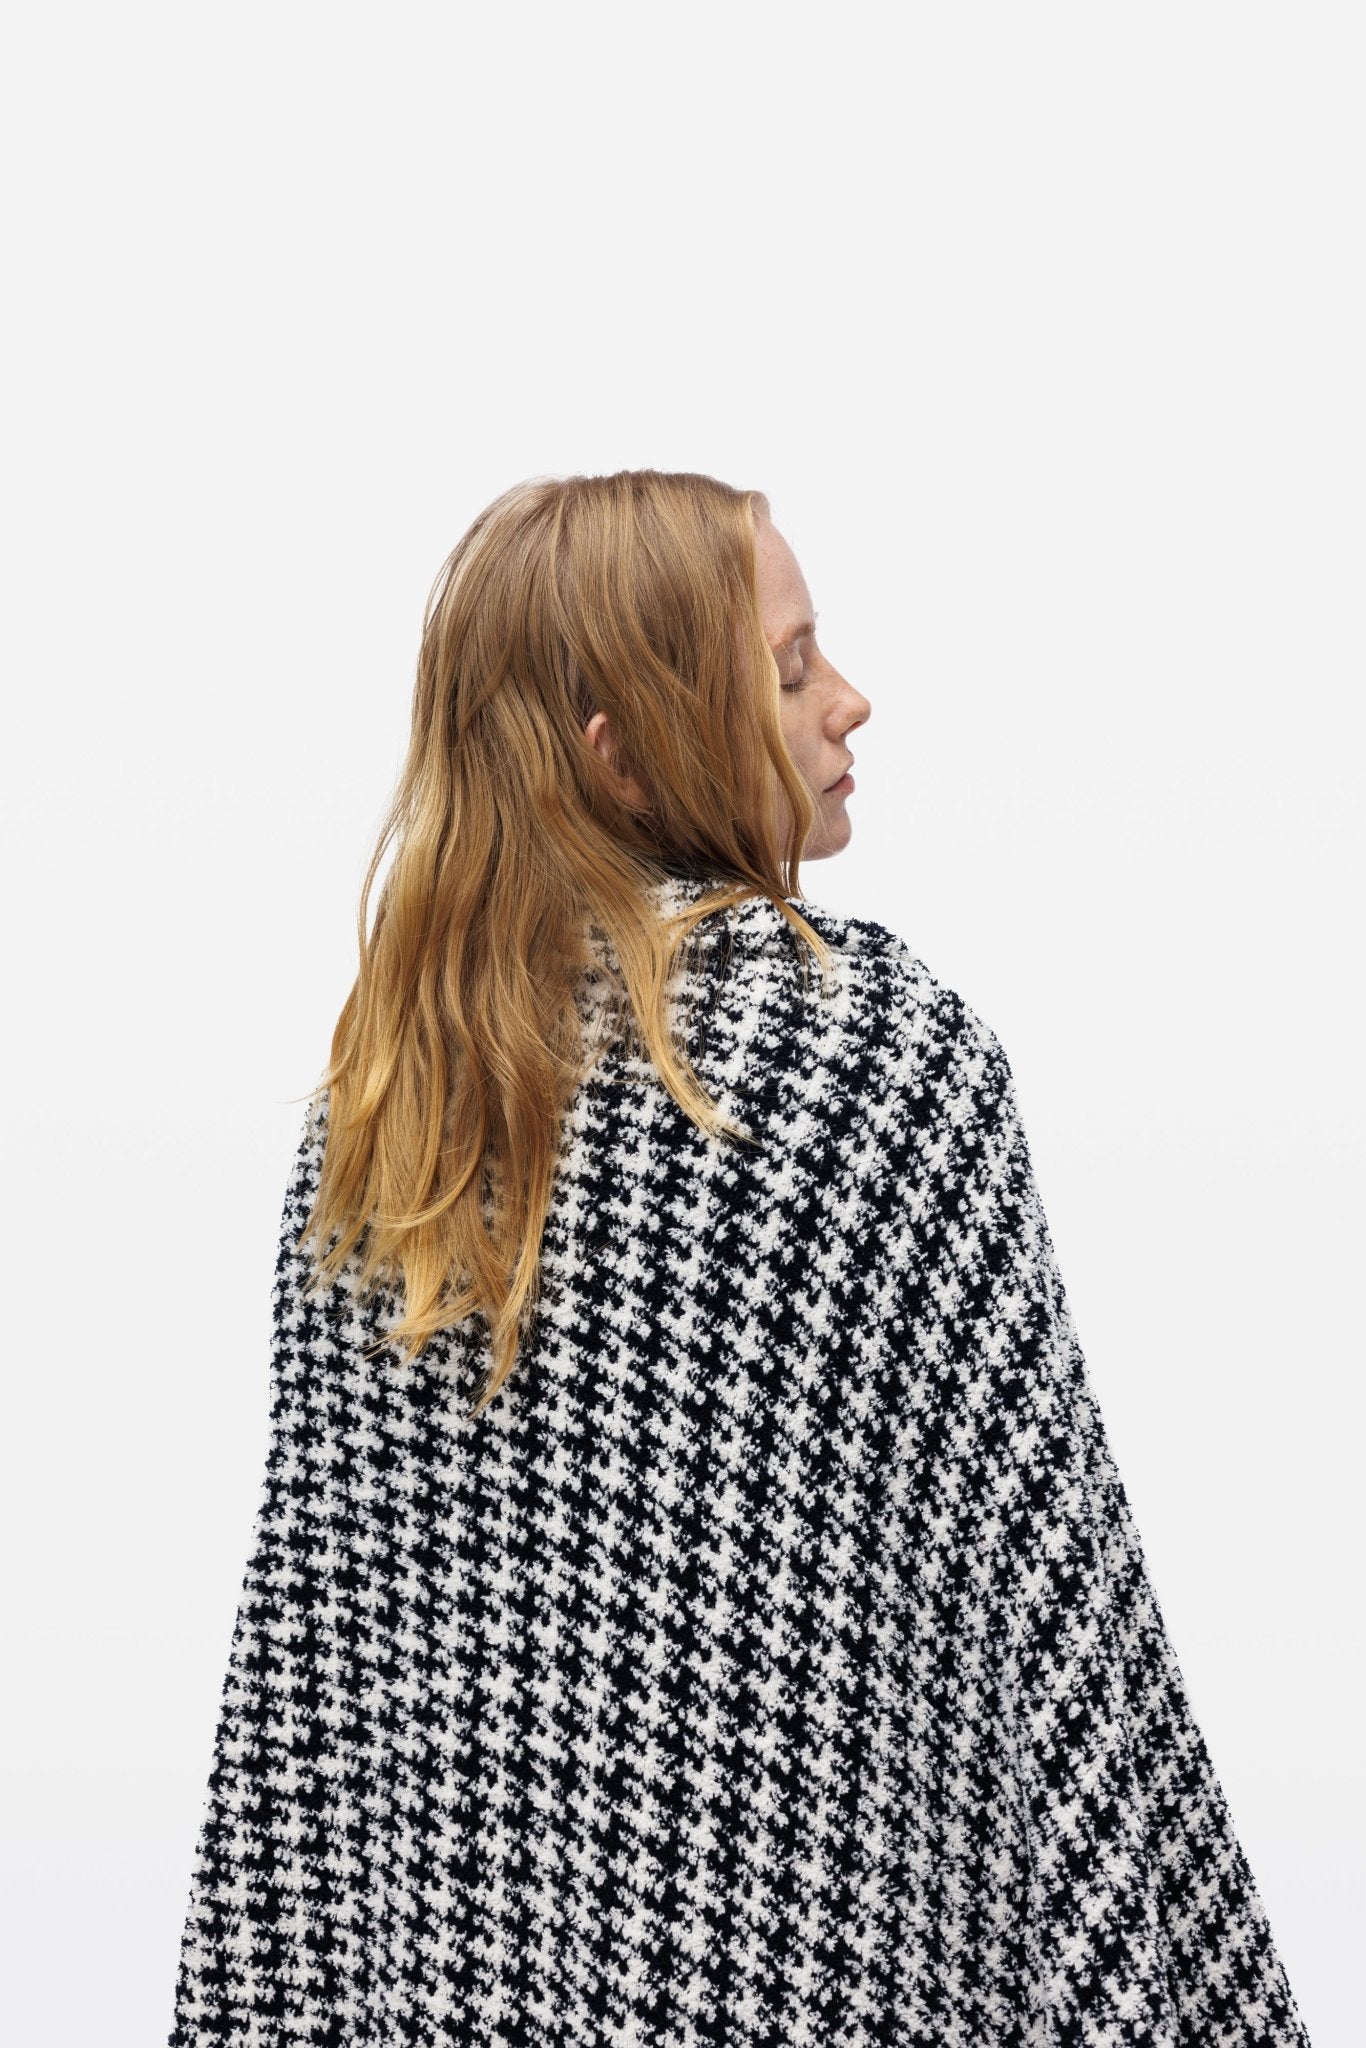 Black & White Houndstooth Pattern Plush Throw Blanket - Throw - Touchofgod.co